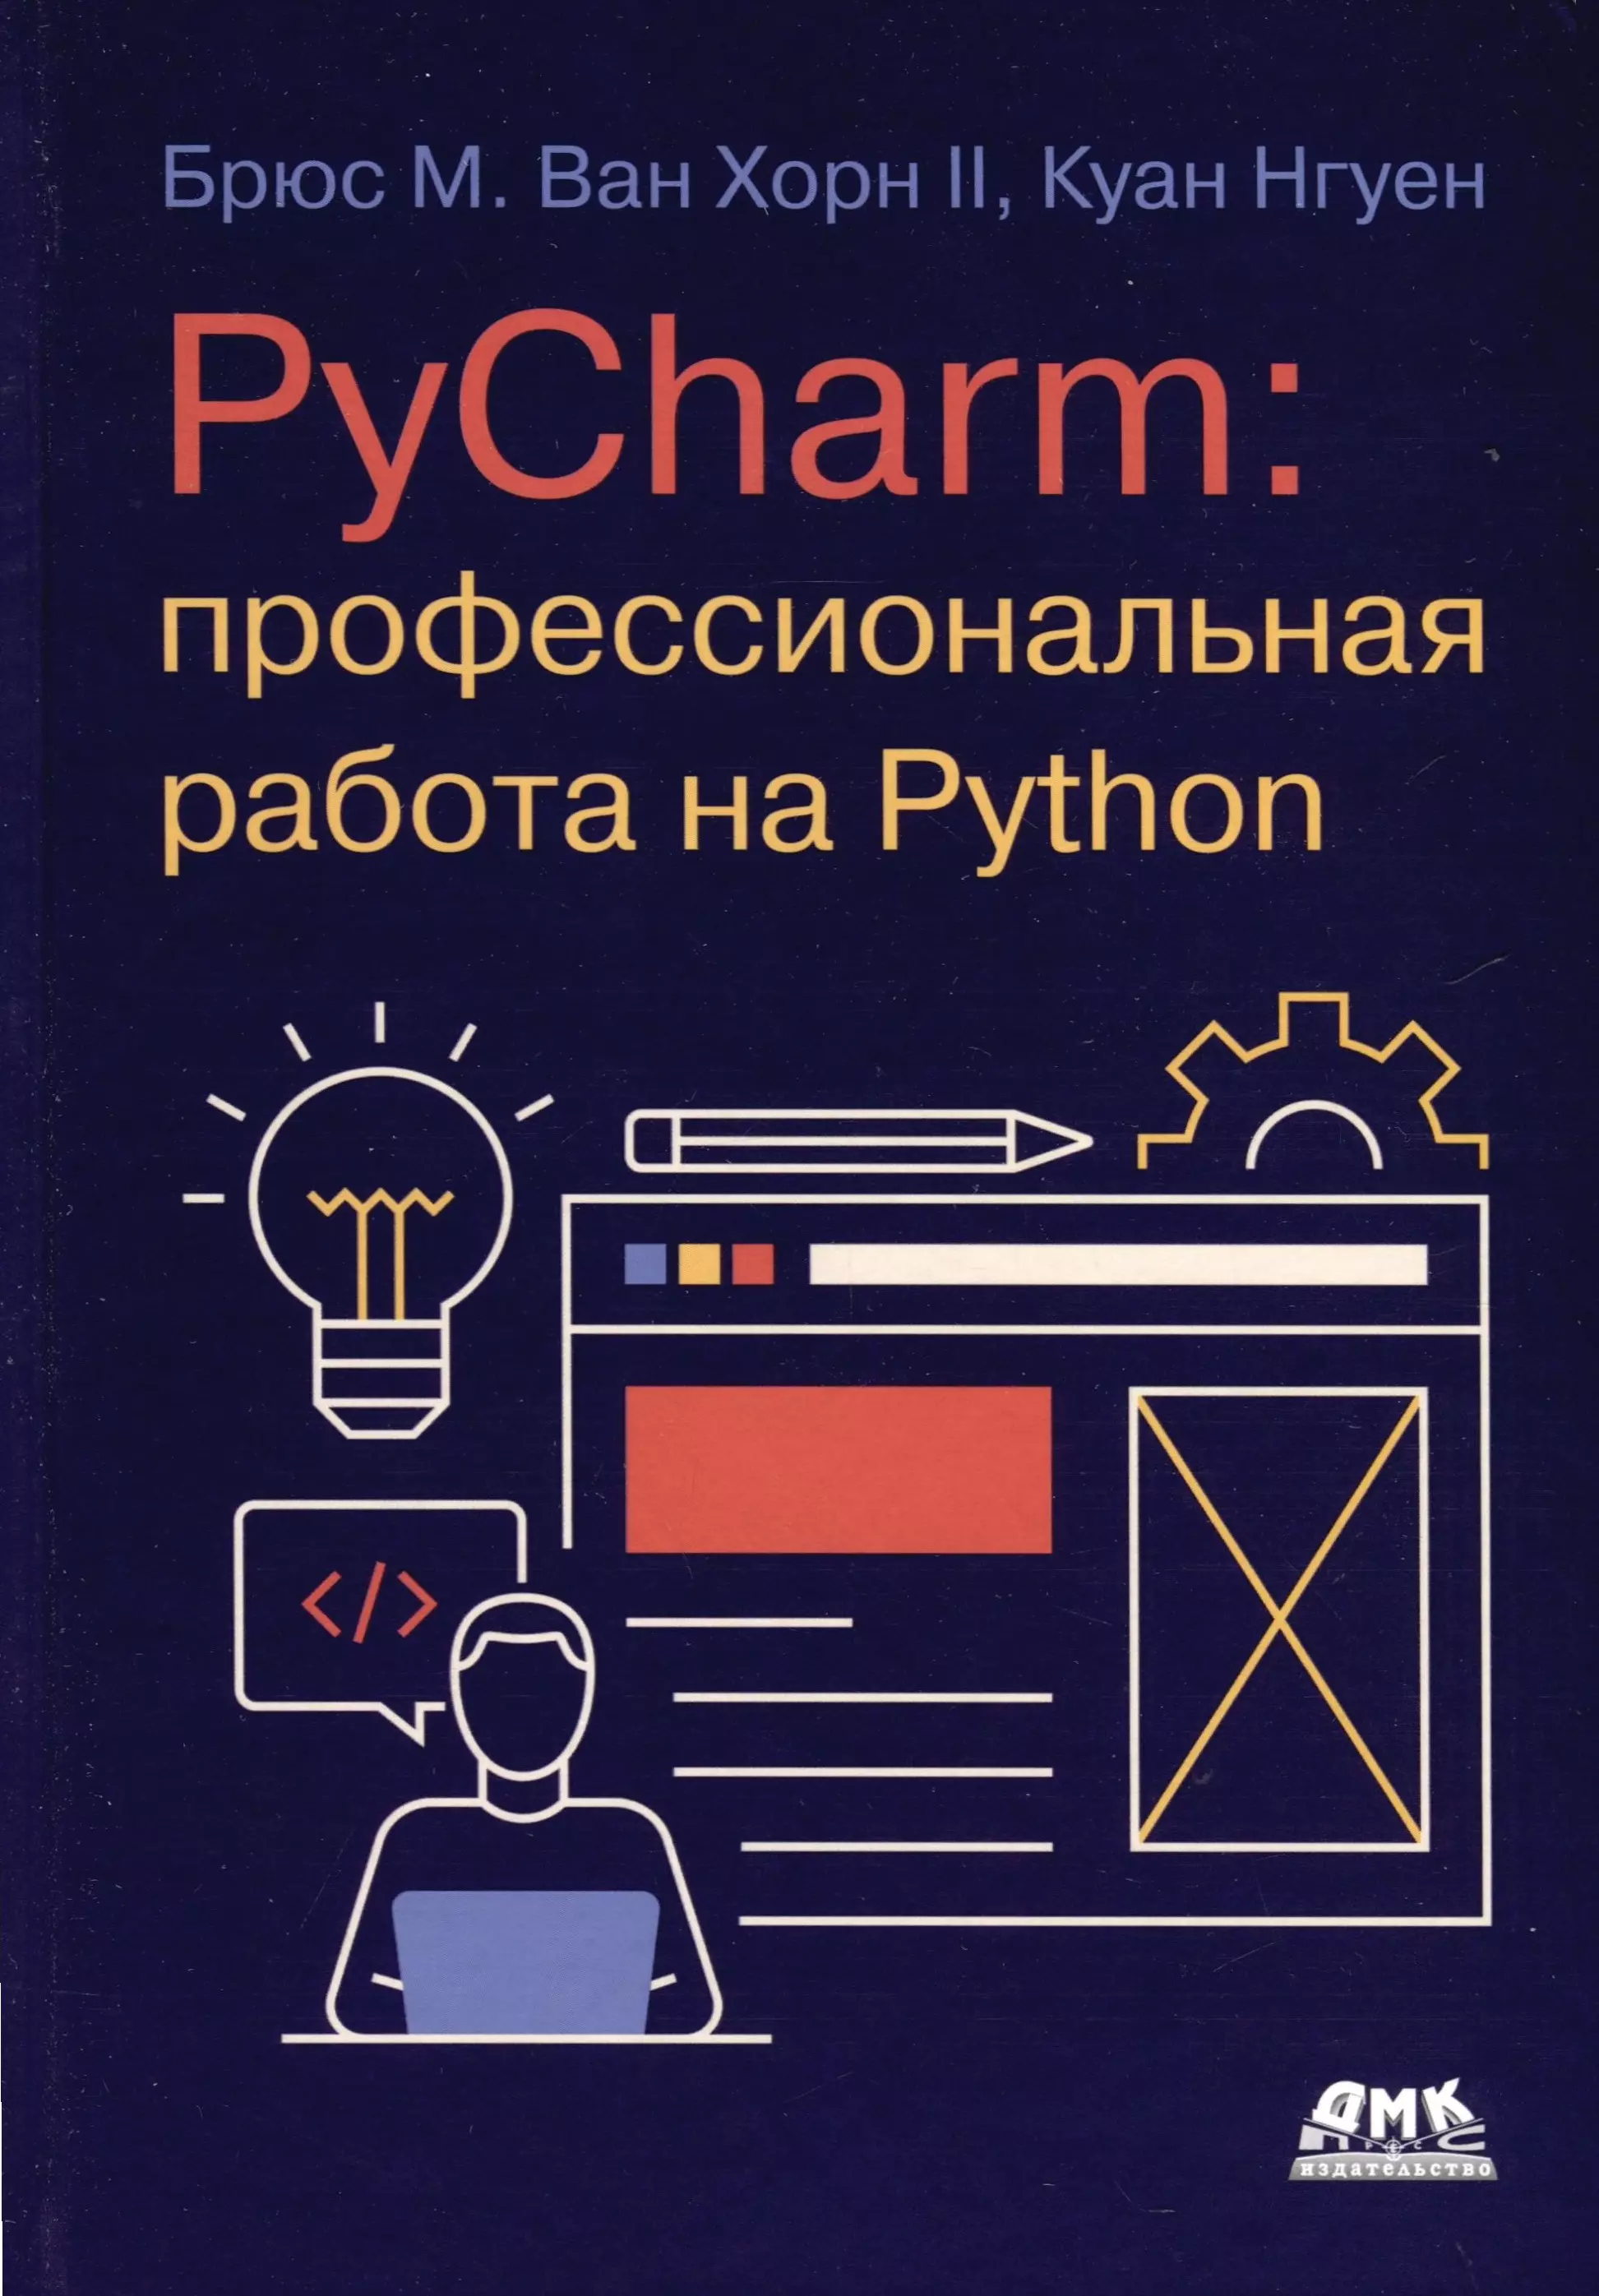 PYCHARM: профессиональная работа на PYTHON python cловари и множества